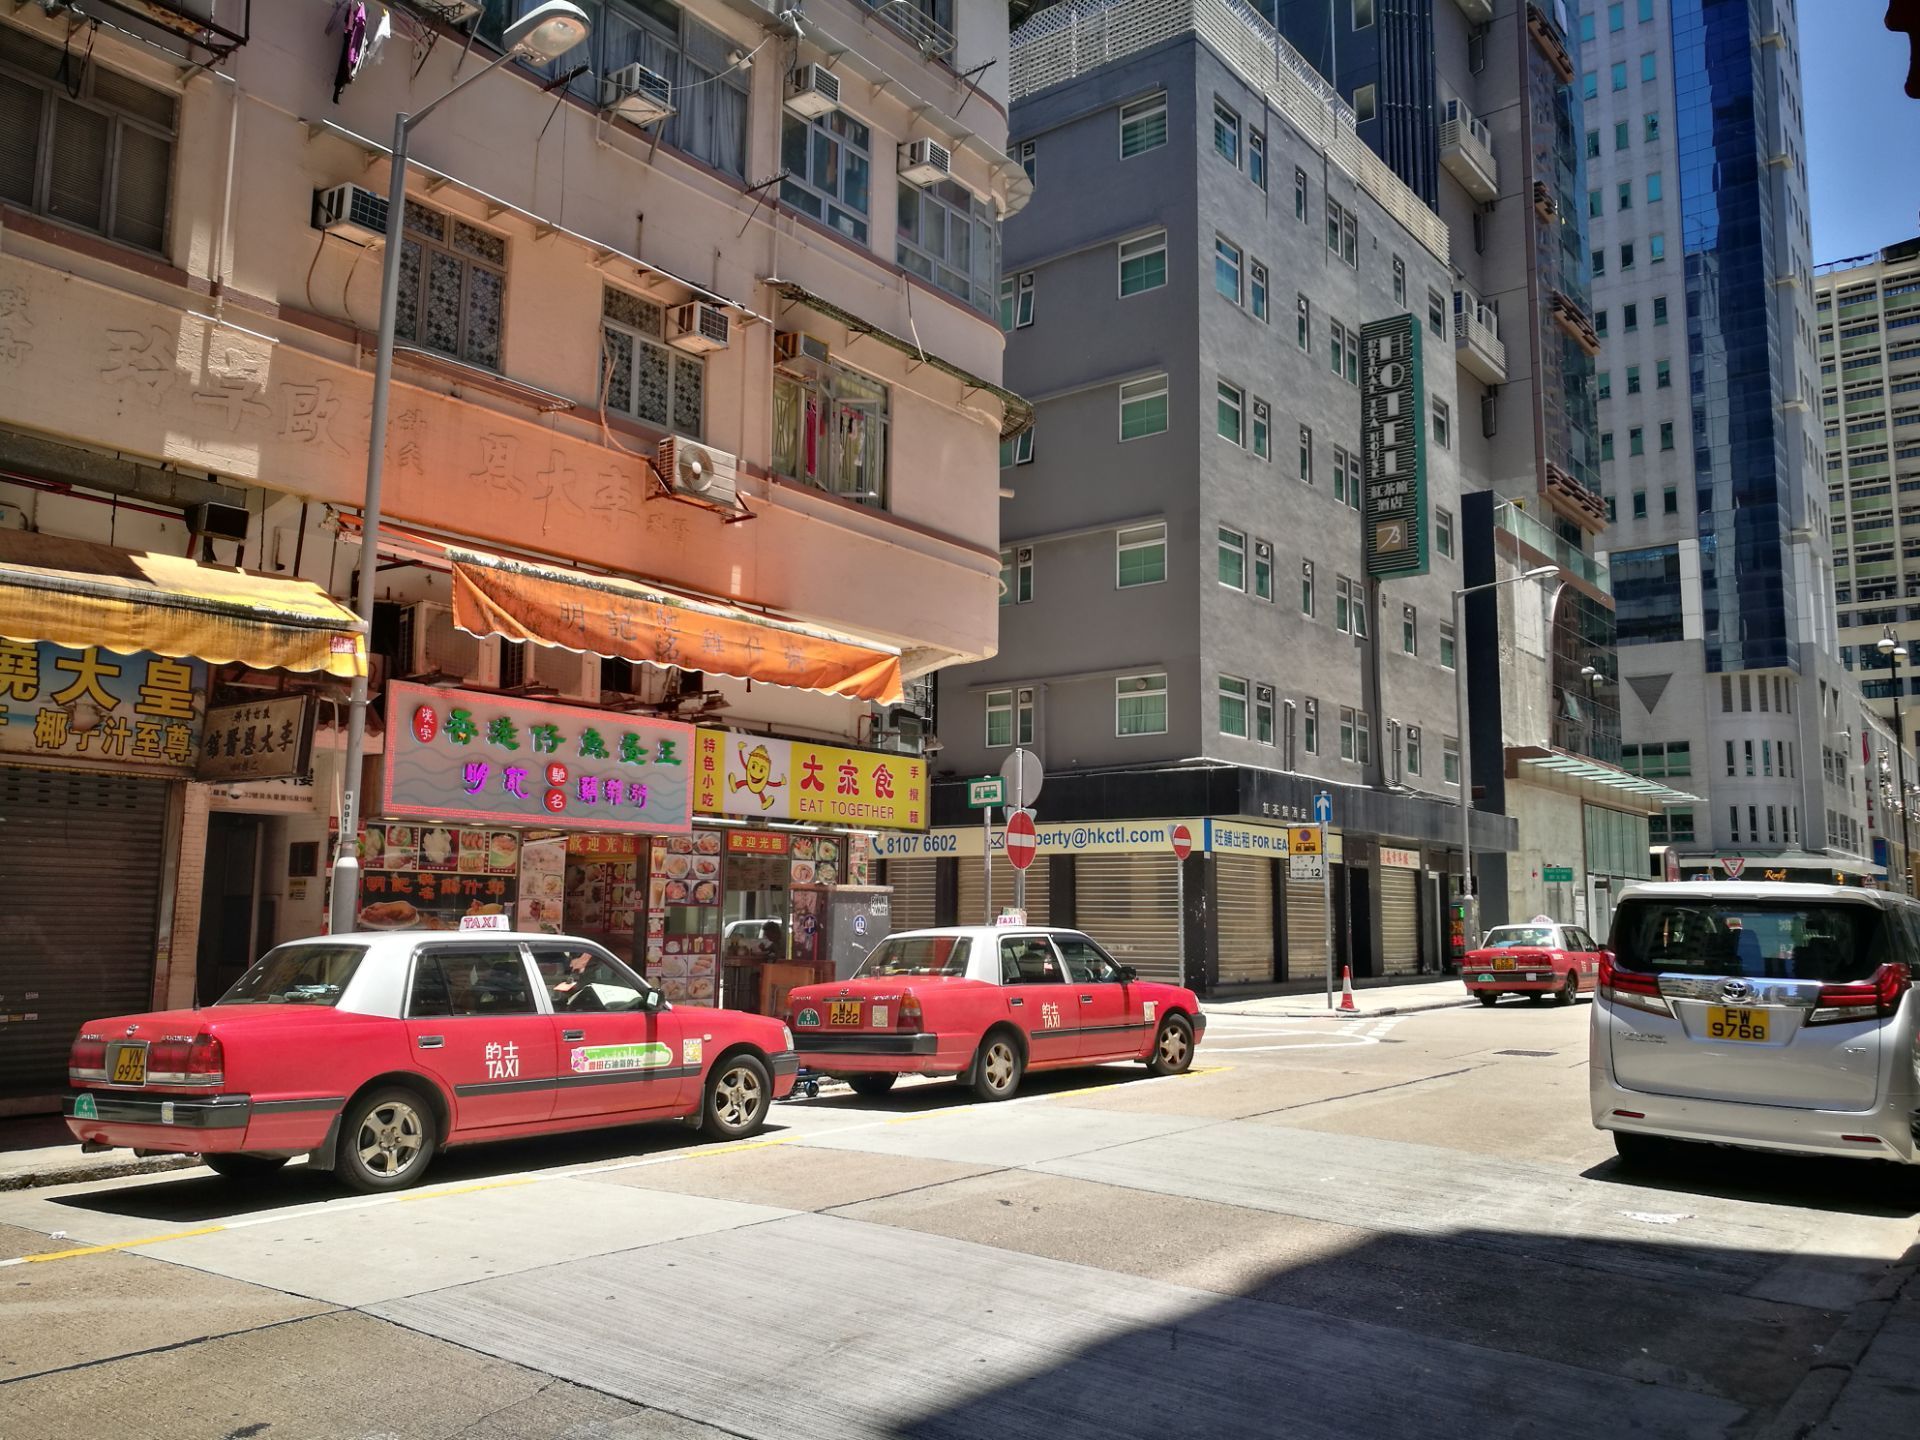 香港庙街 又名称为男人街购物攻略 庙街 又名称为男人街物中心 地址 电话 营业时间 携程攻略